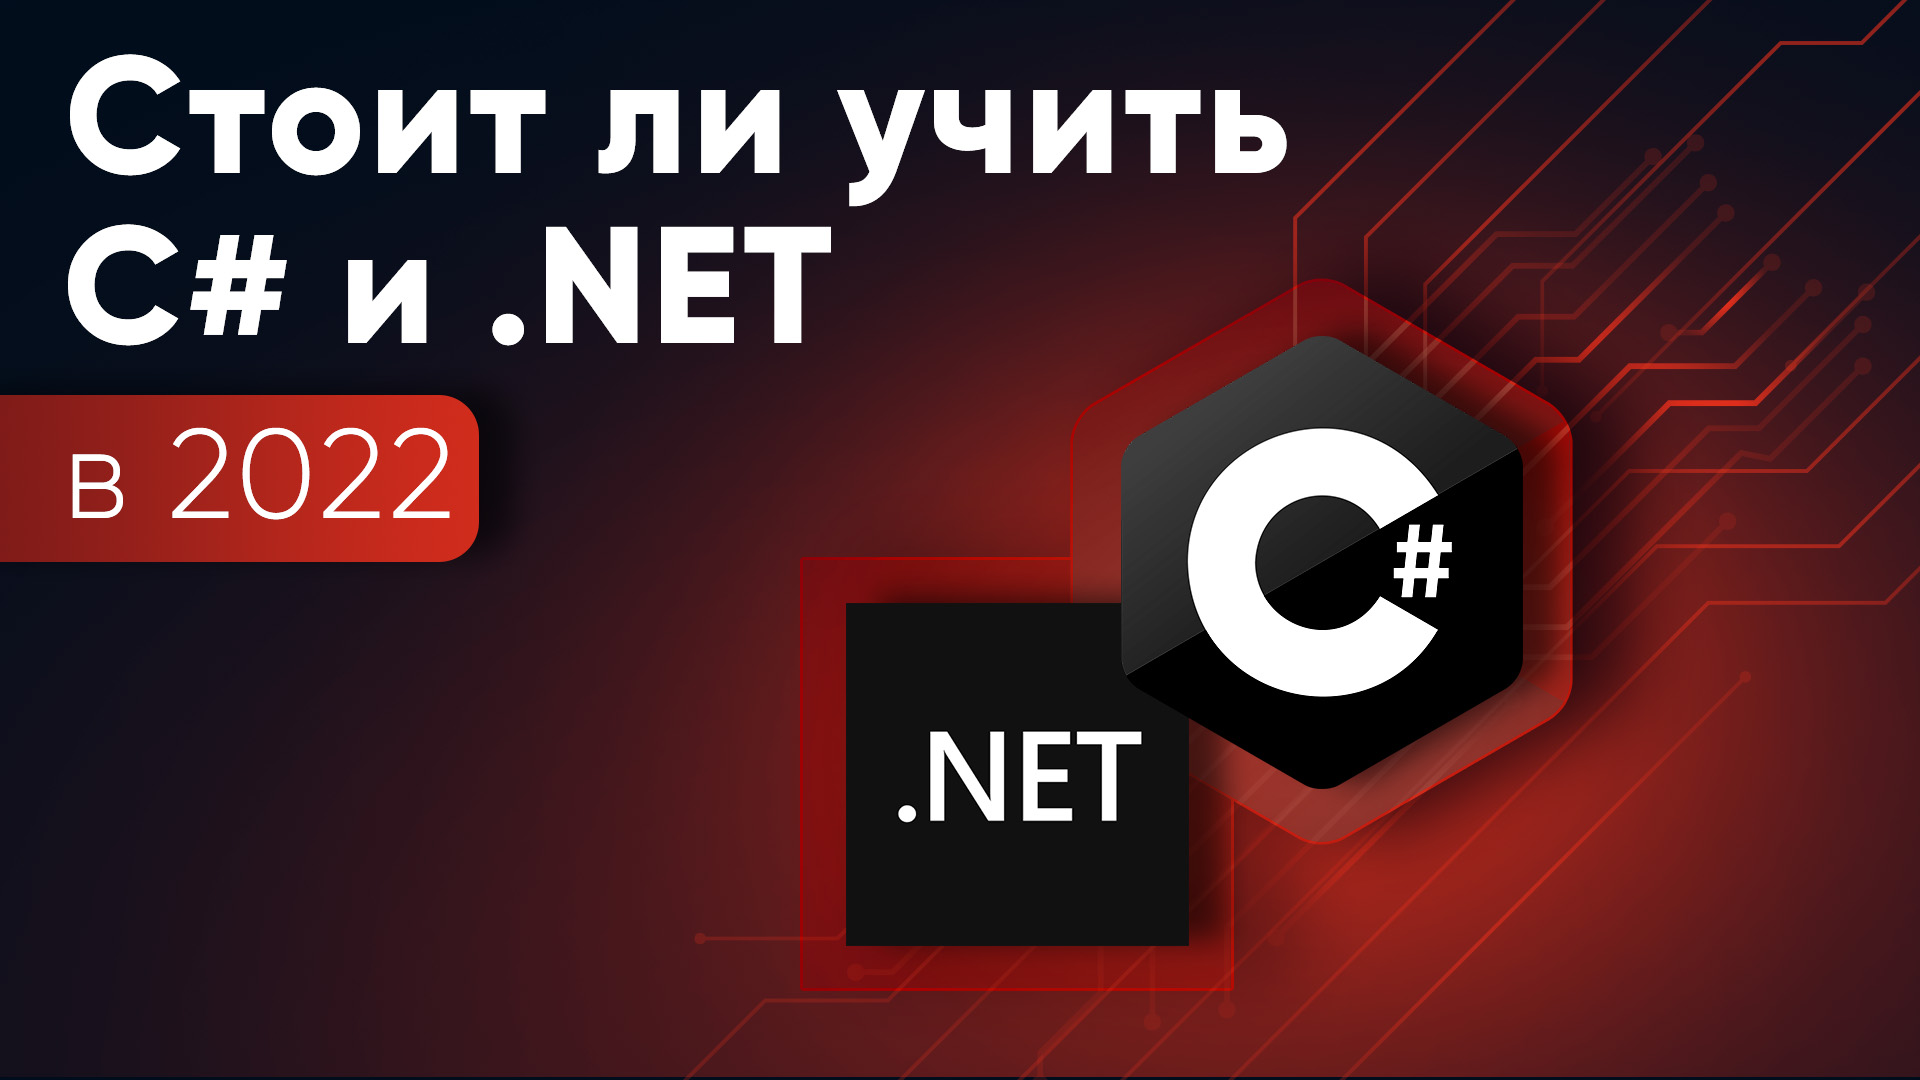 Стоит ли учить C# и .NET в 2022 году?